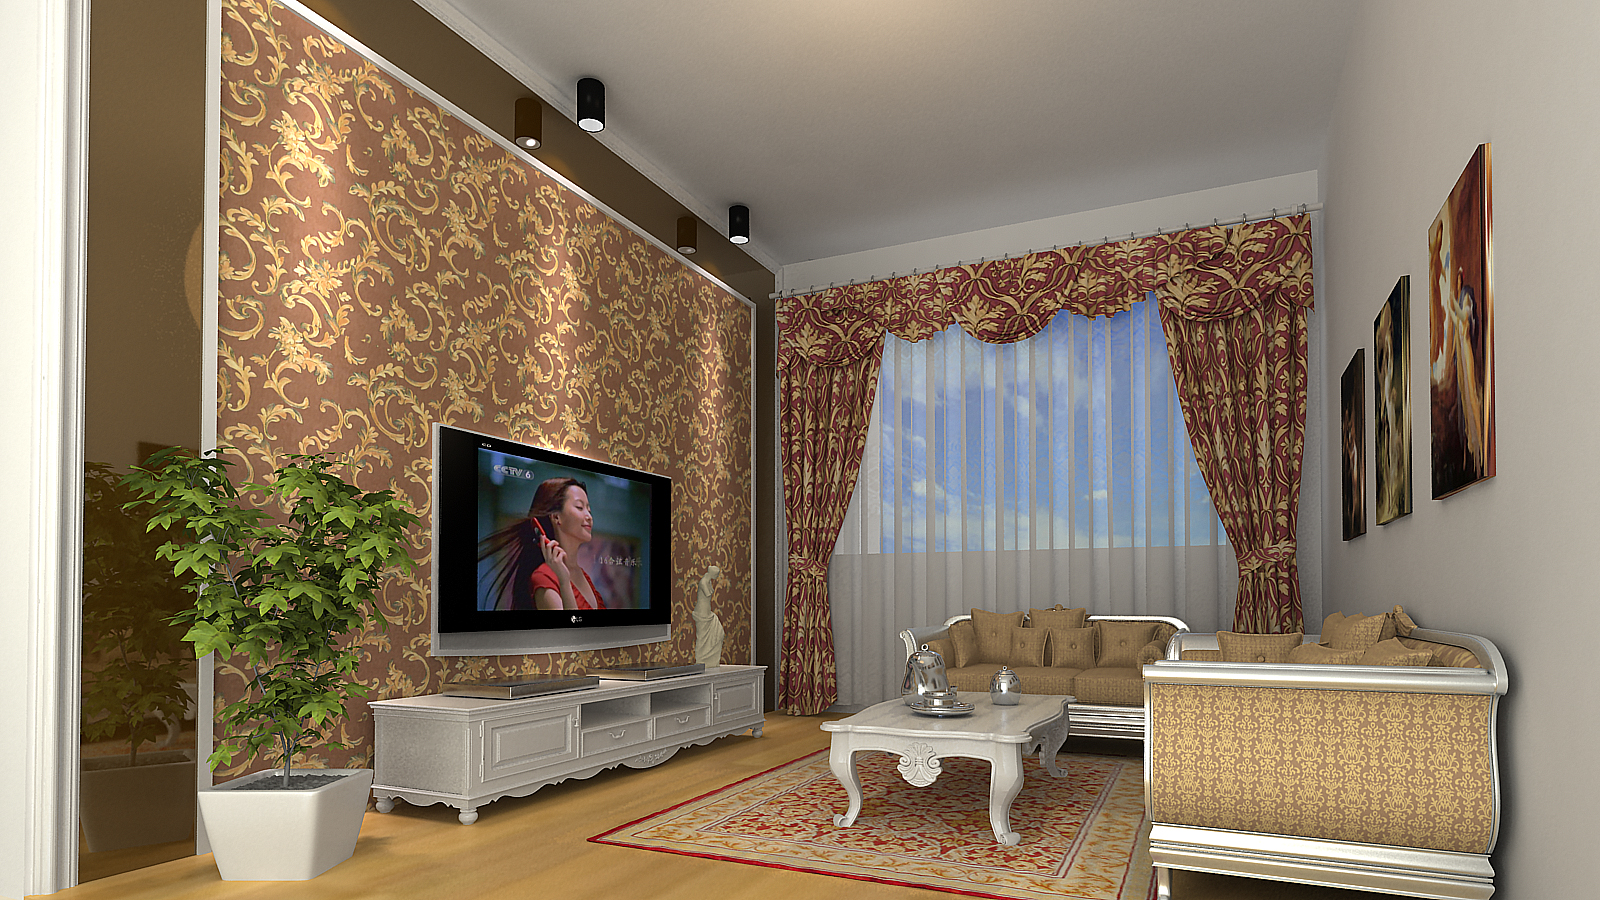 简约 欧式 混搭 别墅 客厅图片来自长沙金煌装饰在温馨浪漫简欧风格的分享